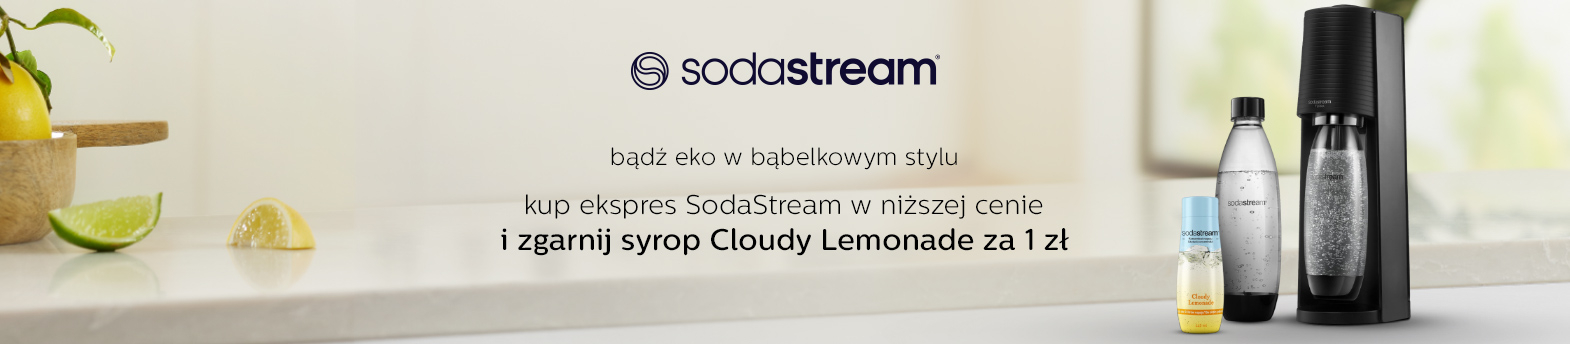 SodaStream syrop za 1 zł